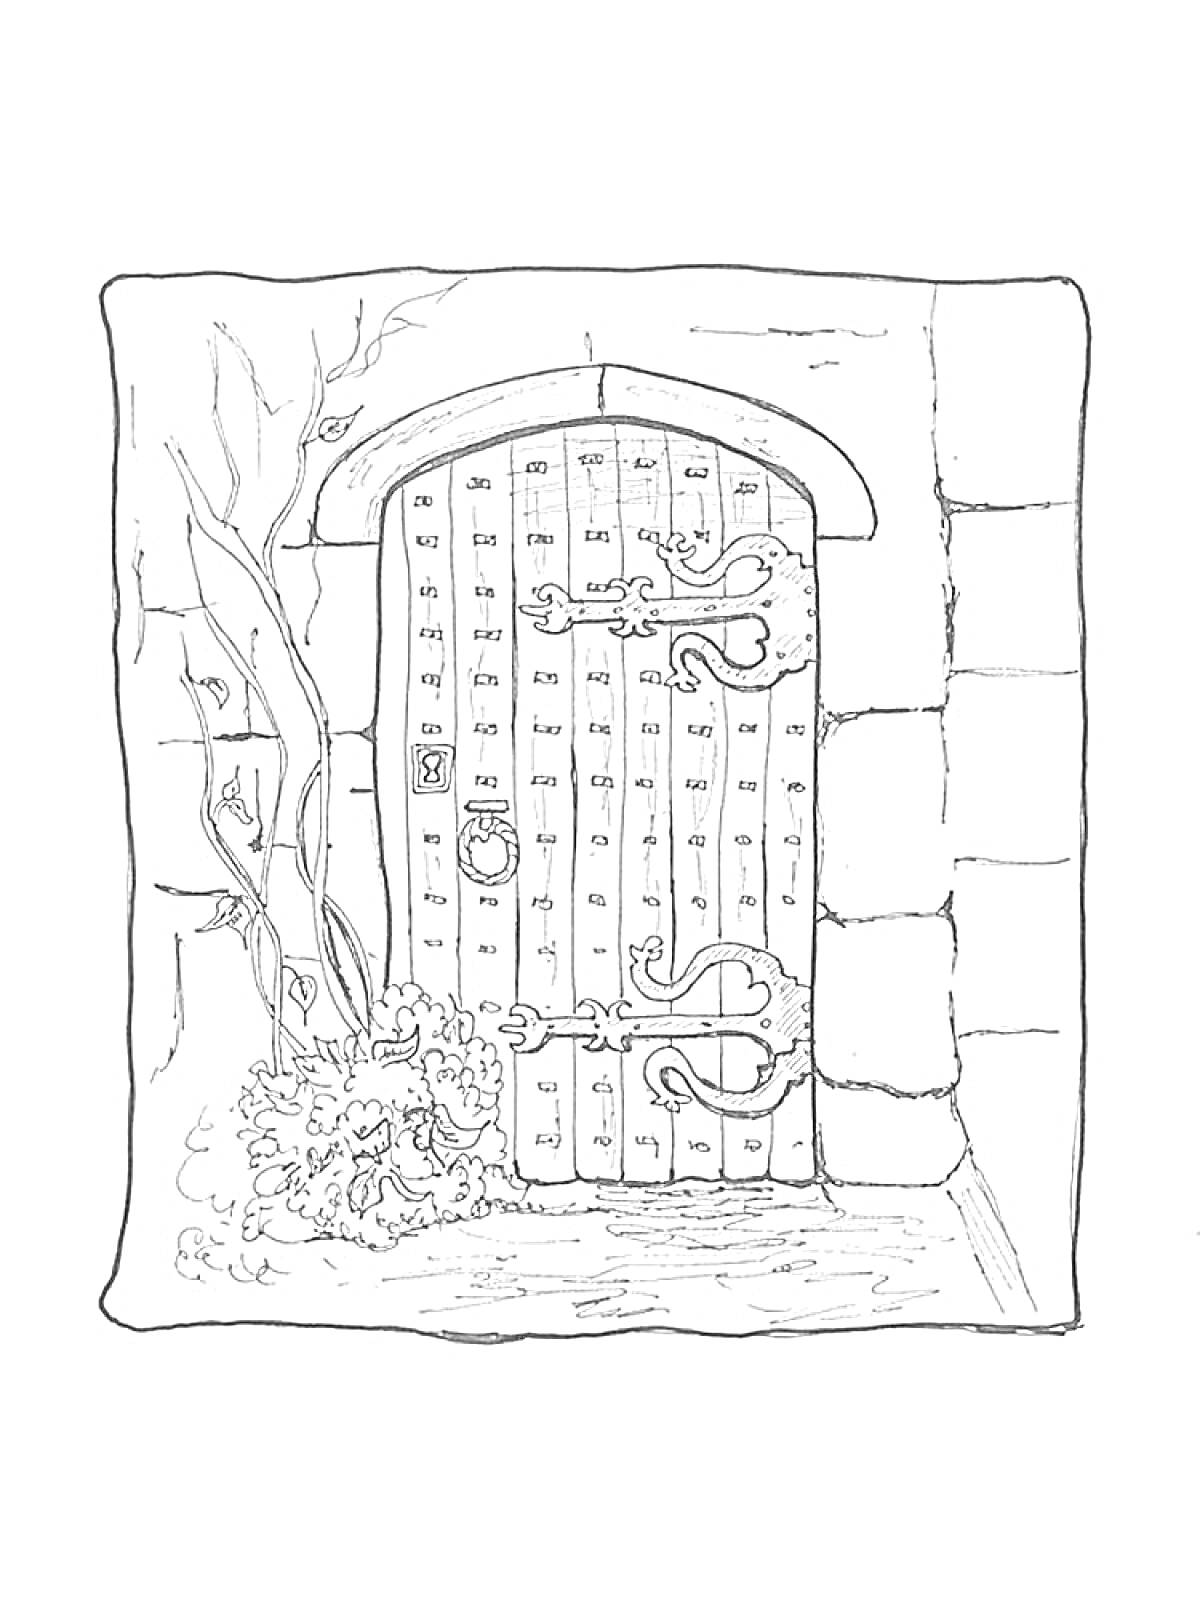 Деревянная дверь с металлическими деталями, декоративным кольцом, растущими рядом растениями и каменной стеной